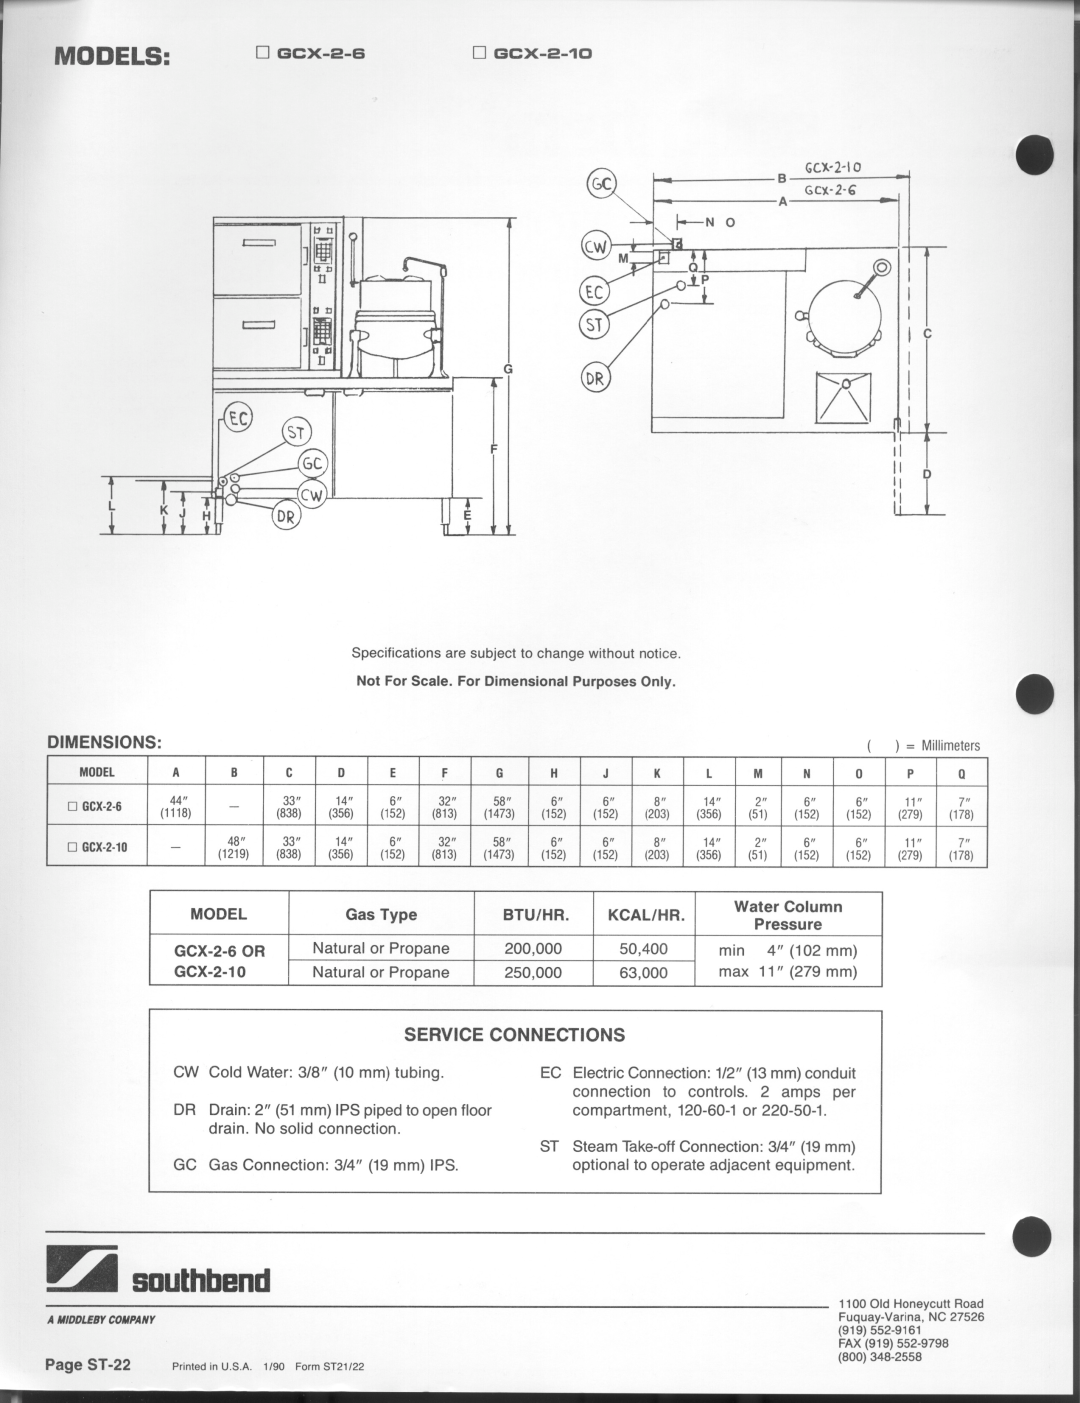 Southbend GCX-2-6, GCX-2-10 manual 